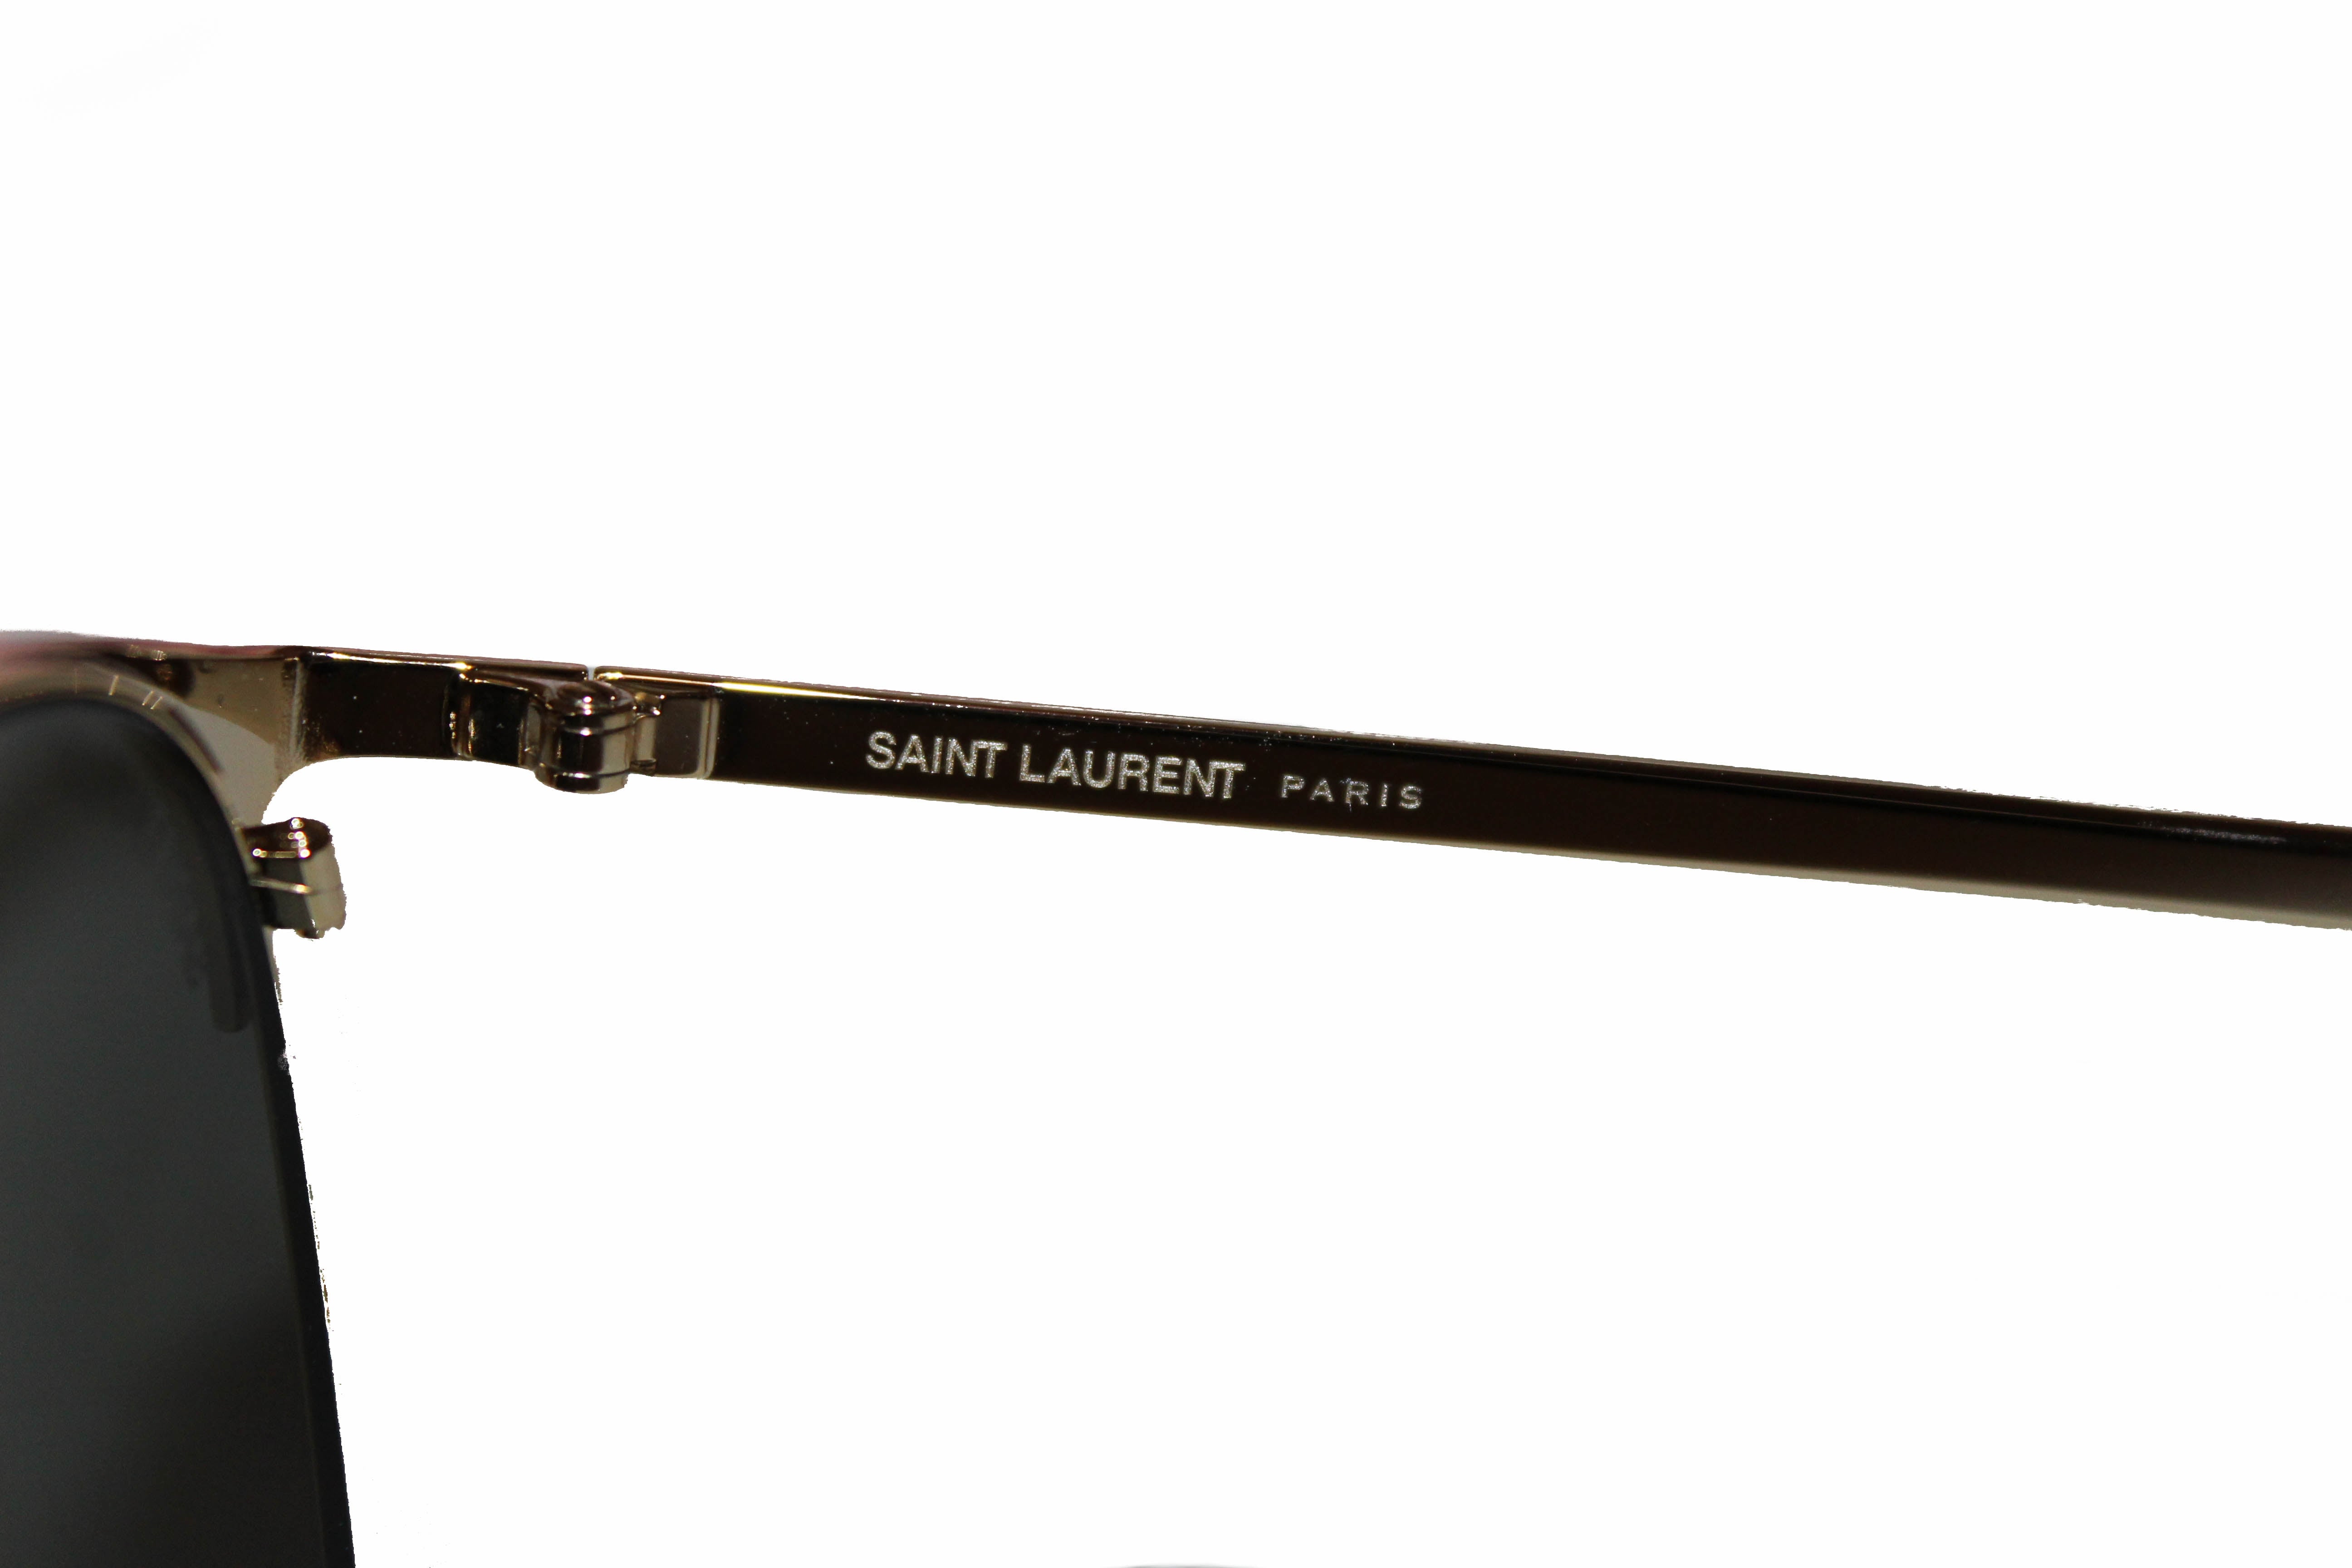 Authentic New Yves Saint Laurent SL 279-005 Men's Rectangle Sunglasses